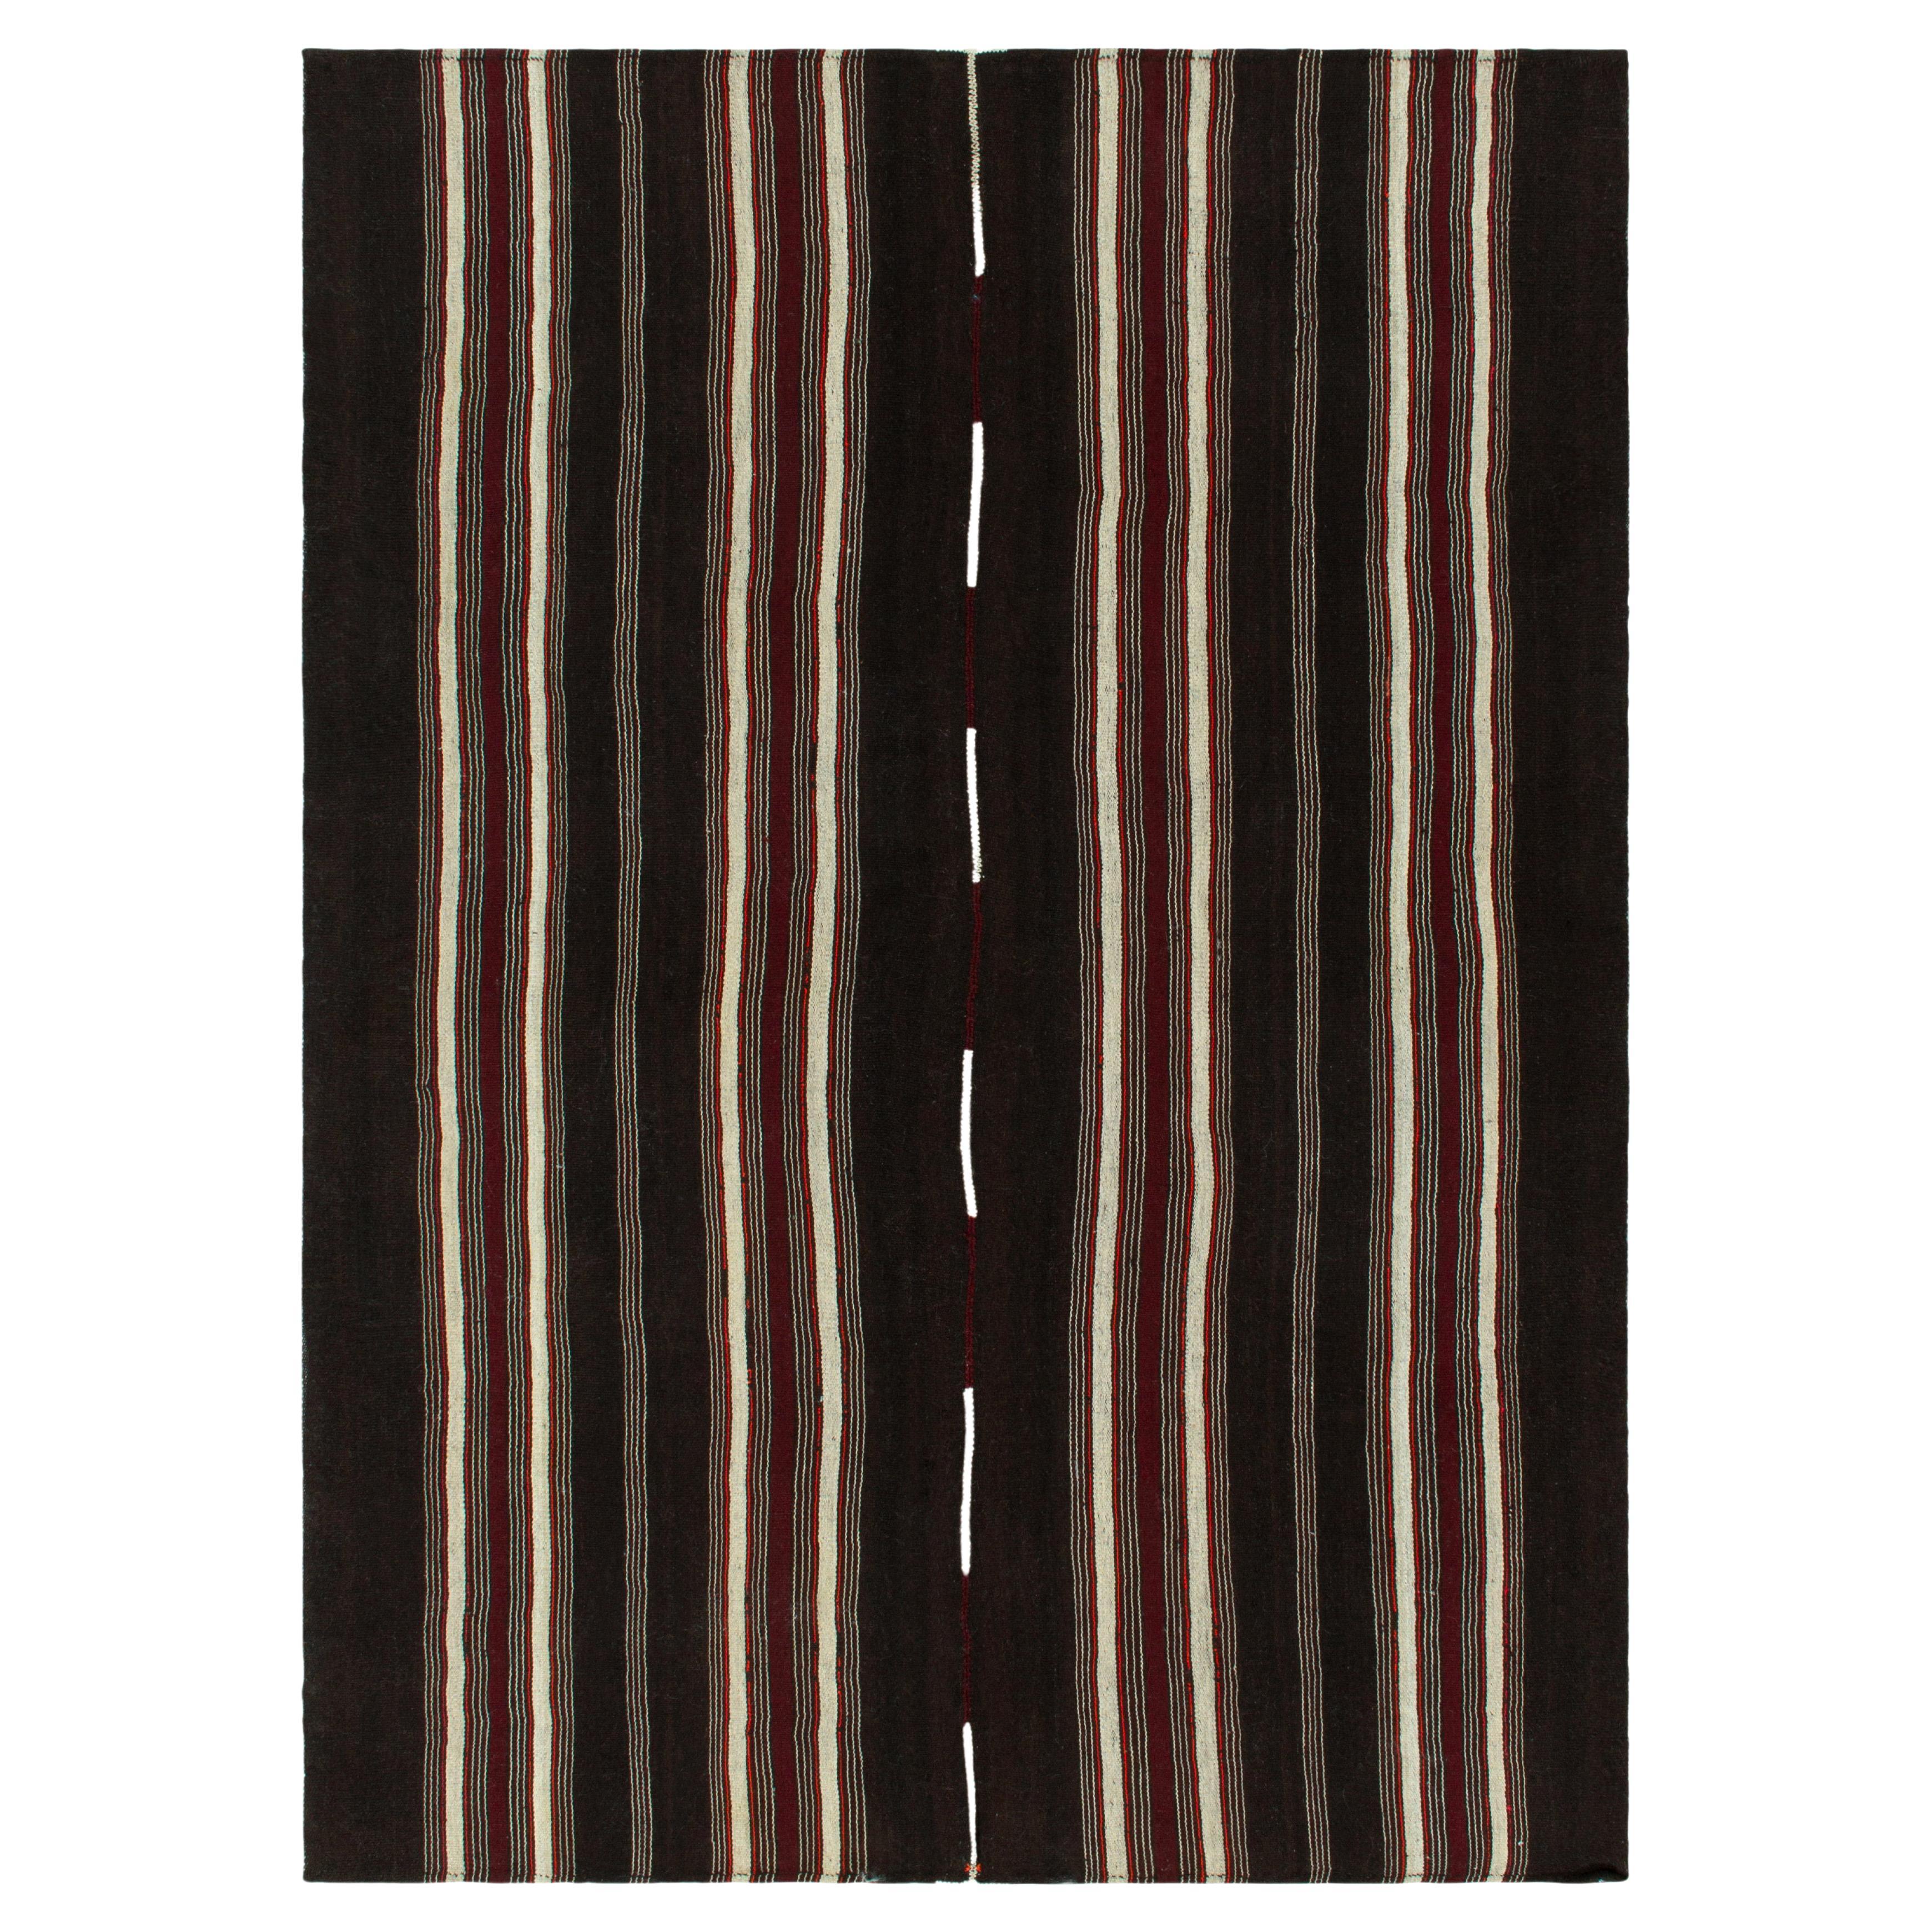 Vintage Kilim Rug in Deep Brown with Red & White Stripe Pattern by Rug & Kilim